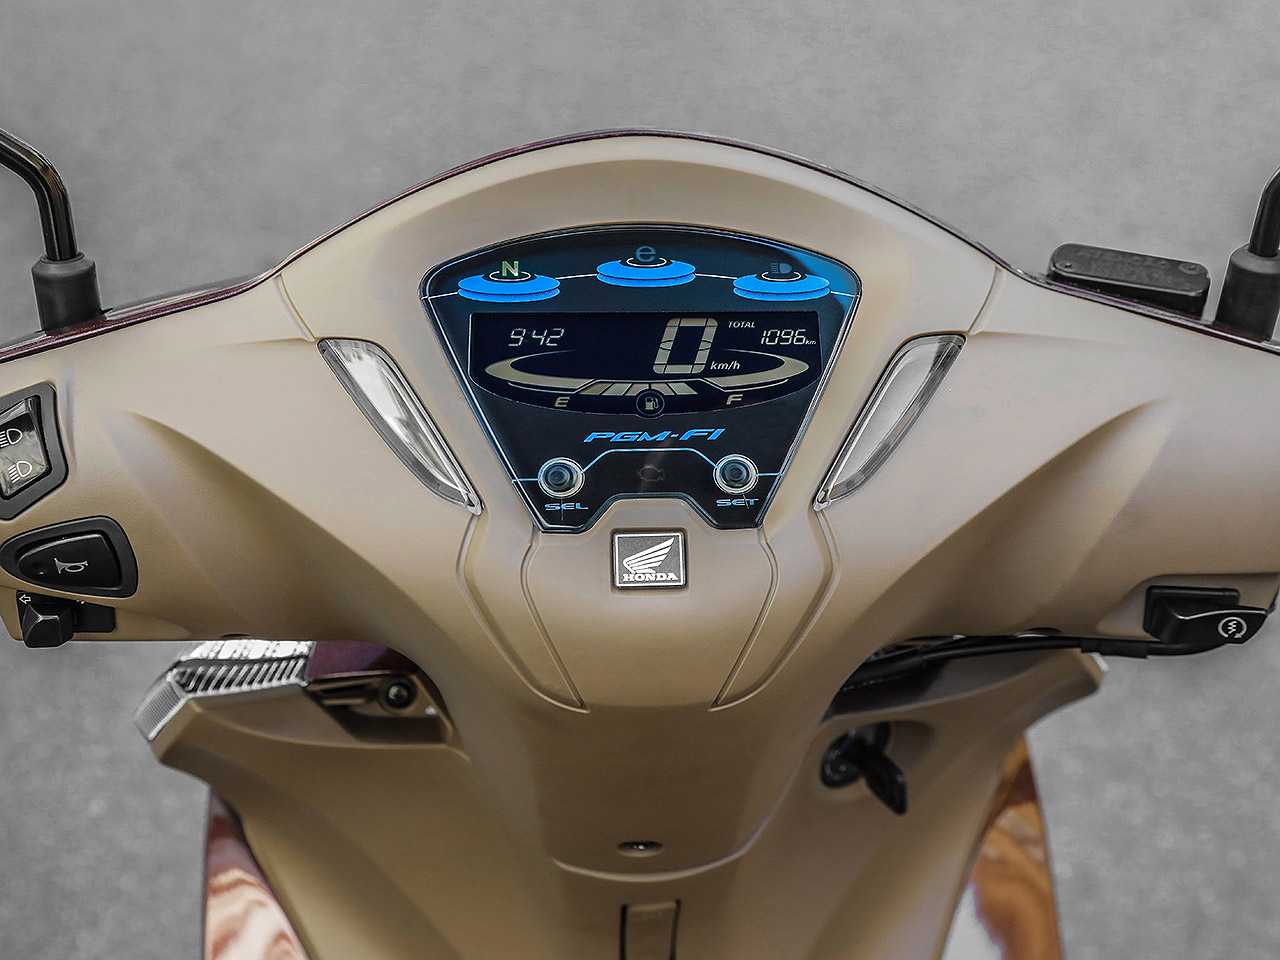 HondaBiz 125 2021 - painel